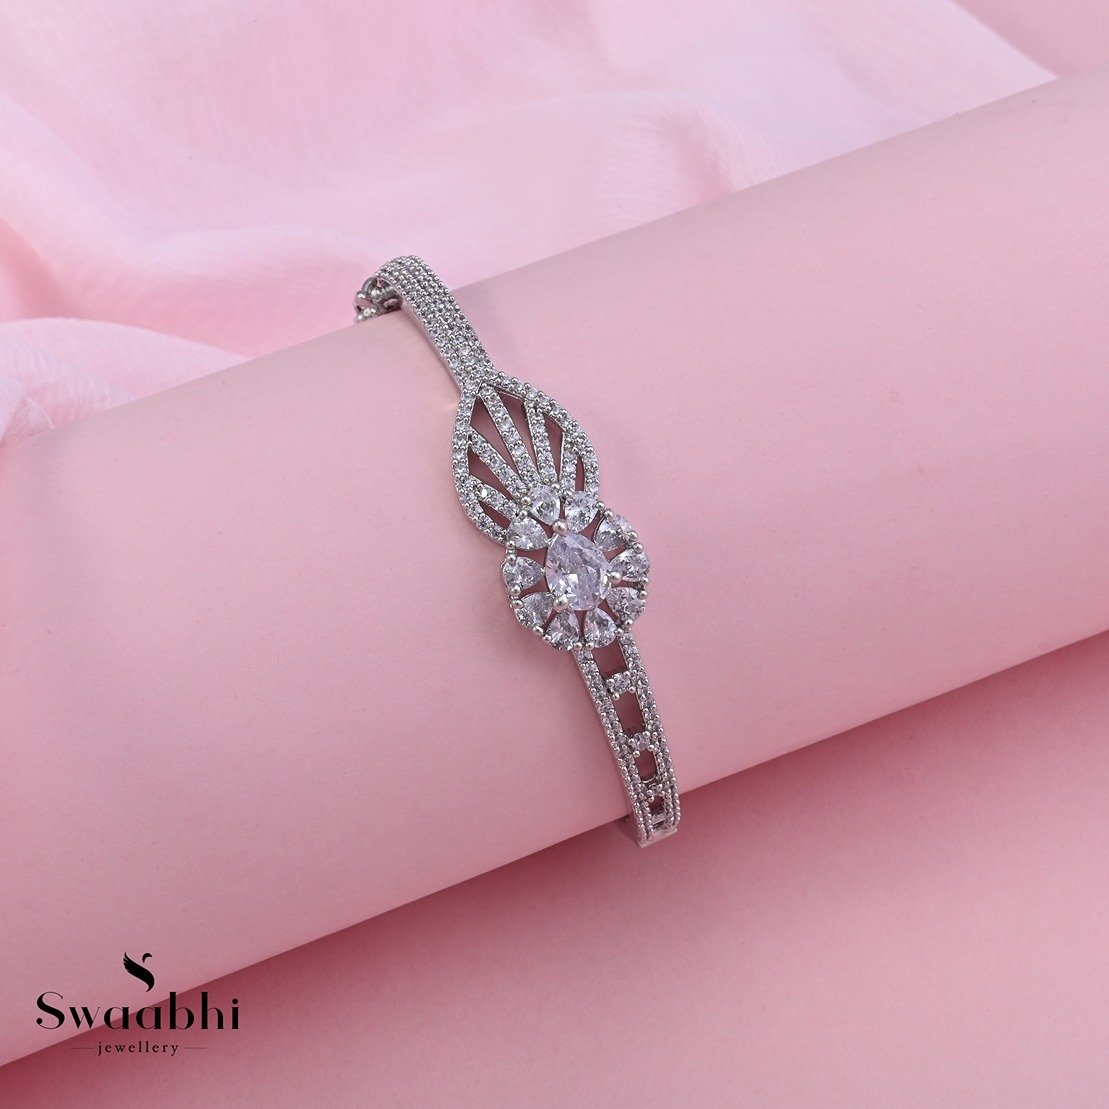 Floral Bloom CZ Bracelet | Buy jewellery online, Cz bracelet, Bridal jewelry